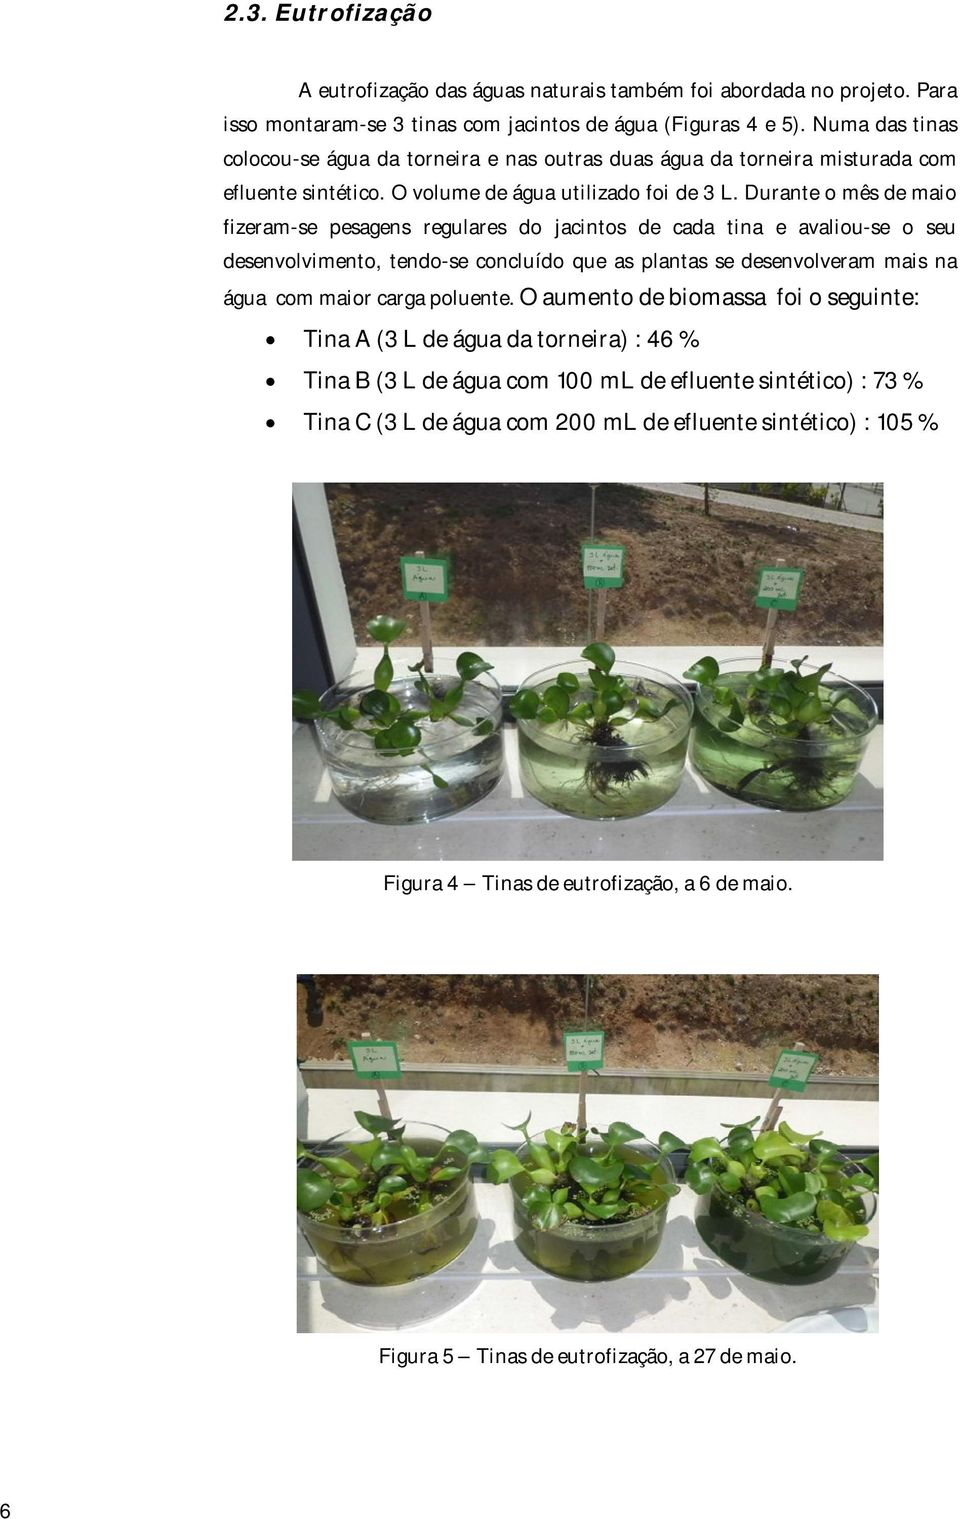 Durante o mês de maio fizeram-se pesagens regulares do jacintos de cada tina e avaliou-se o seu desenvolvimento, tendo-se concluído que as plantas se desenvolveram mais na água com maior carga